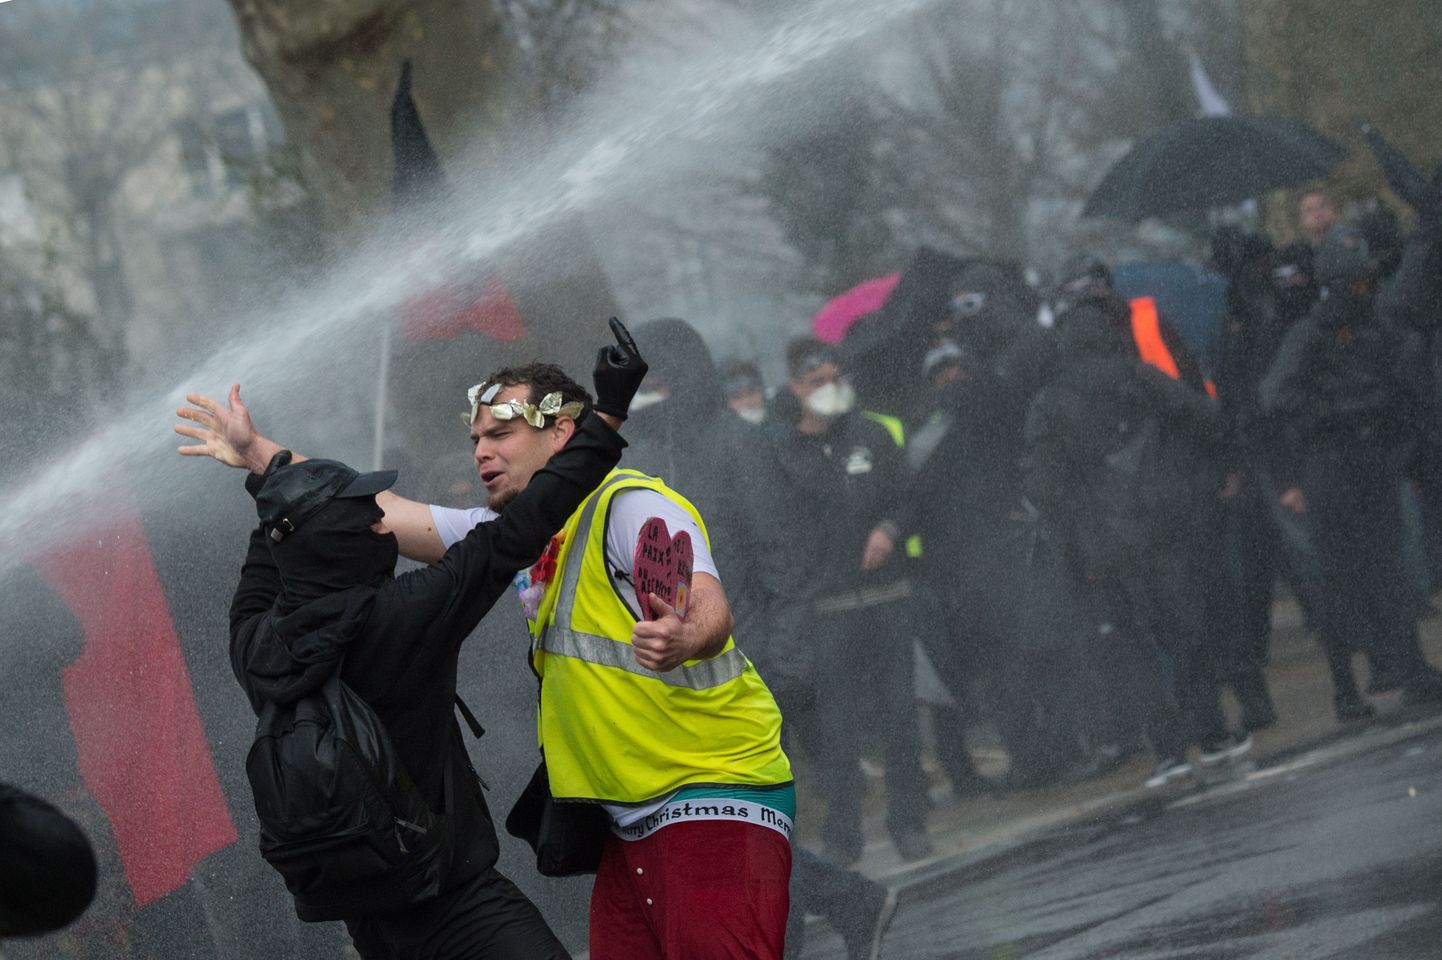 Valitsusvastased nn kollavestidest protestijad Prantsusmaal Nantes'is. Lääneriikides on usaldus demokratia toimimise vastu kahanenud rekordmadalaks.